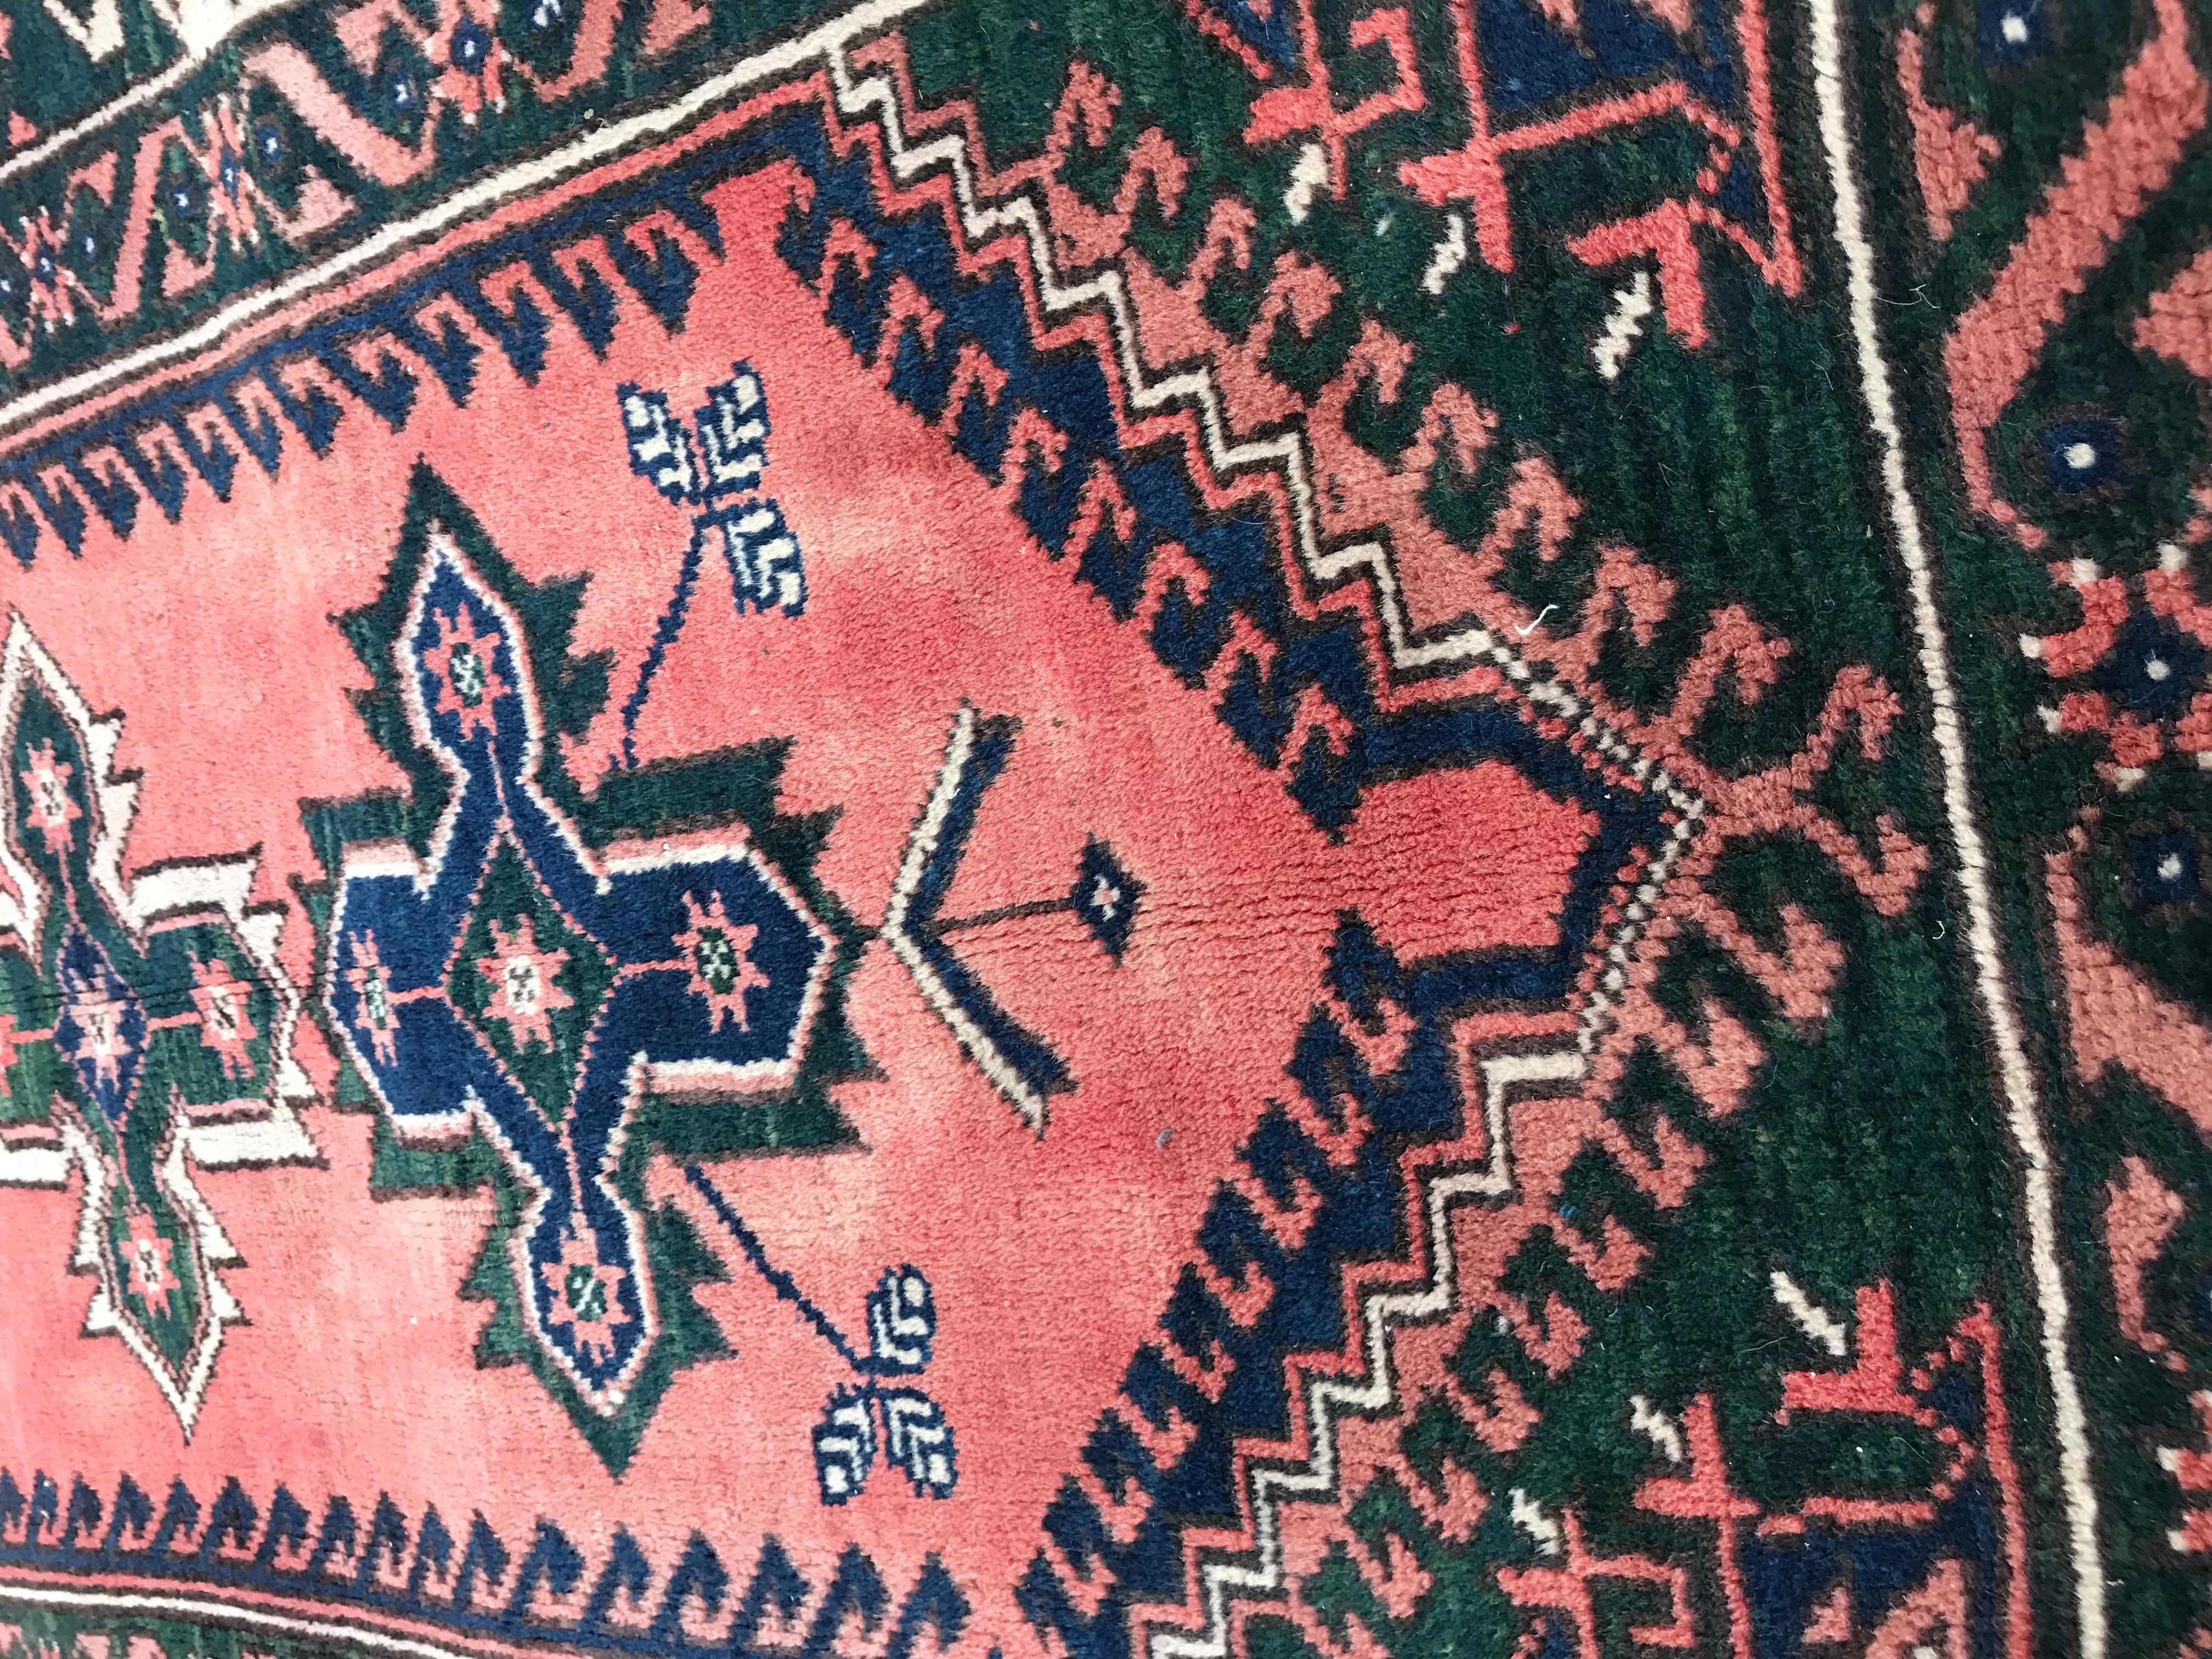 Magnifique tapis anatolien du 20ème siècle de la Turquie de Konya, avec un dessin géométrique et de belles couleurs avec du rose, du bleu et du vert, entièrement noué à la main avec du velours de laine sur une base de laine.

✨✨✨
